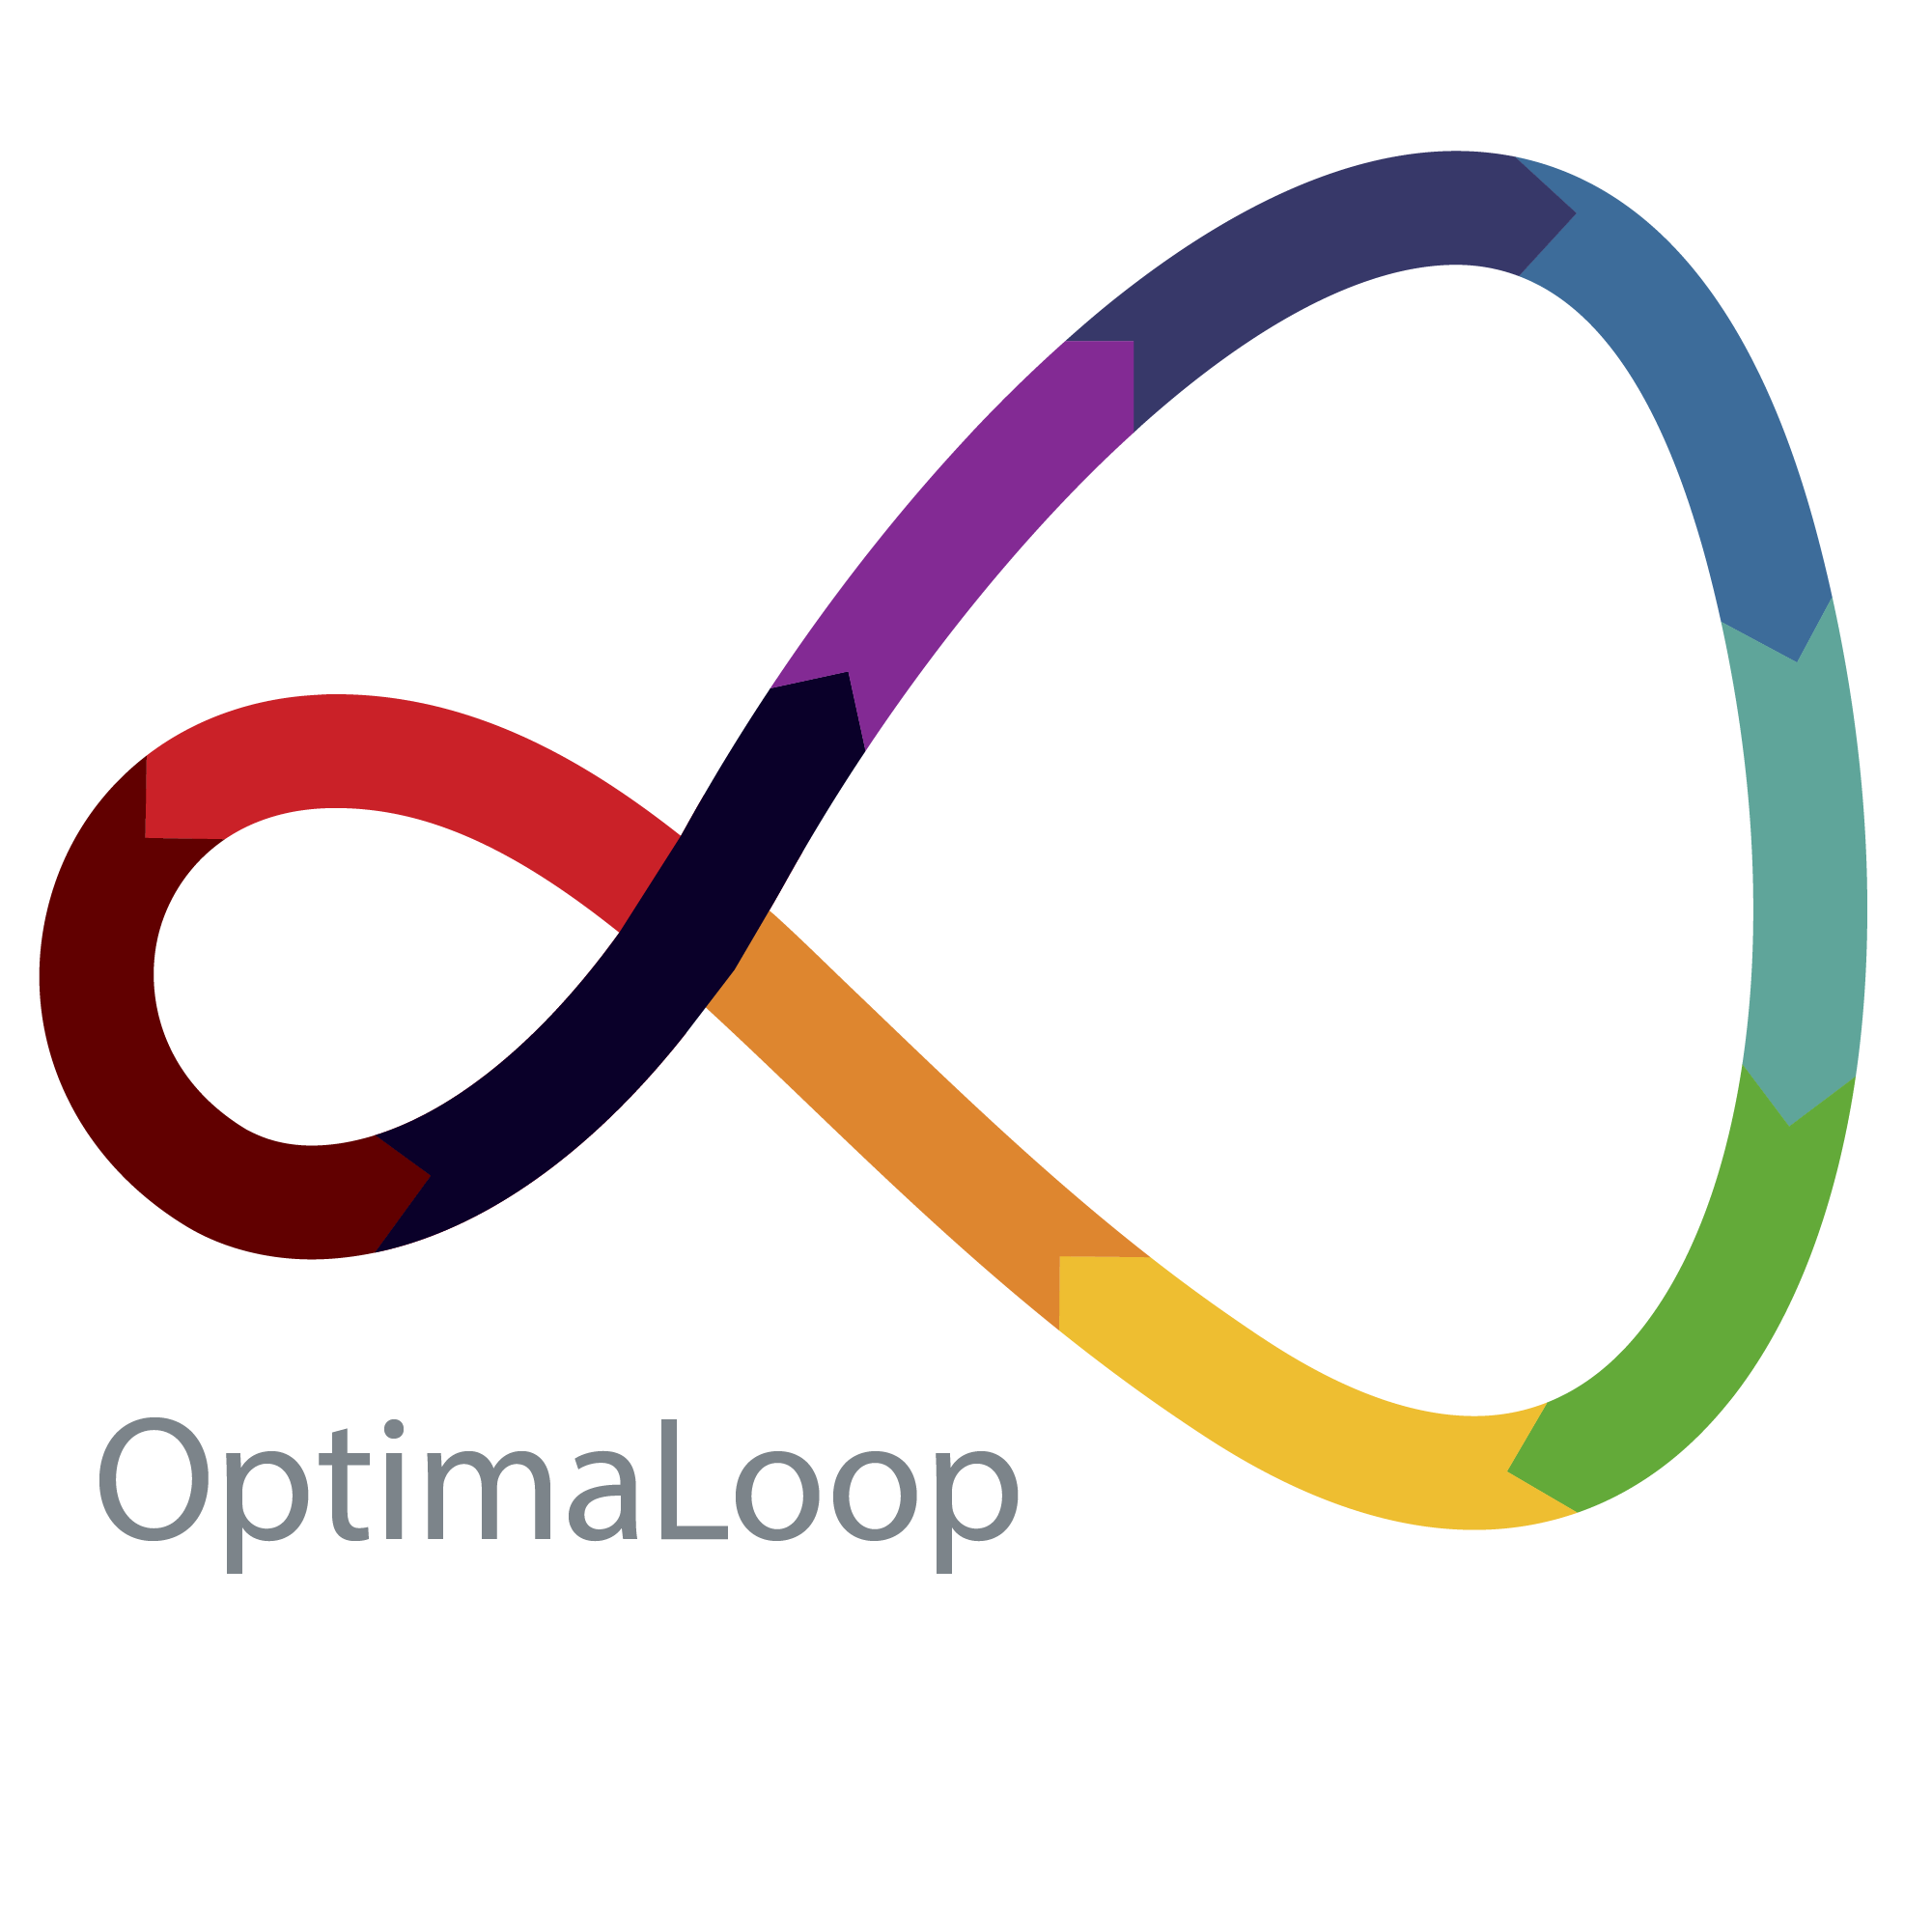 OptimalLoop